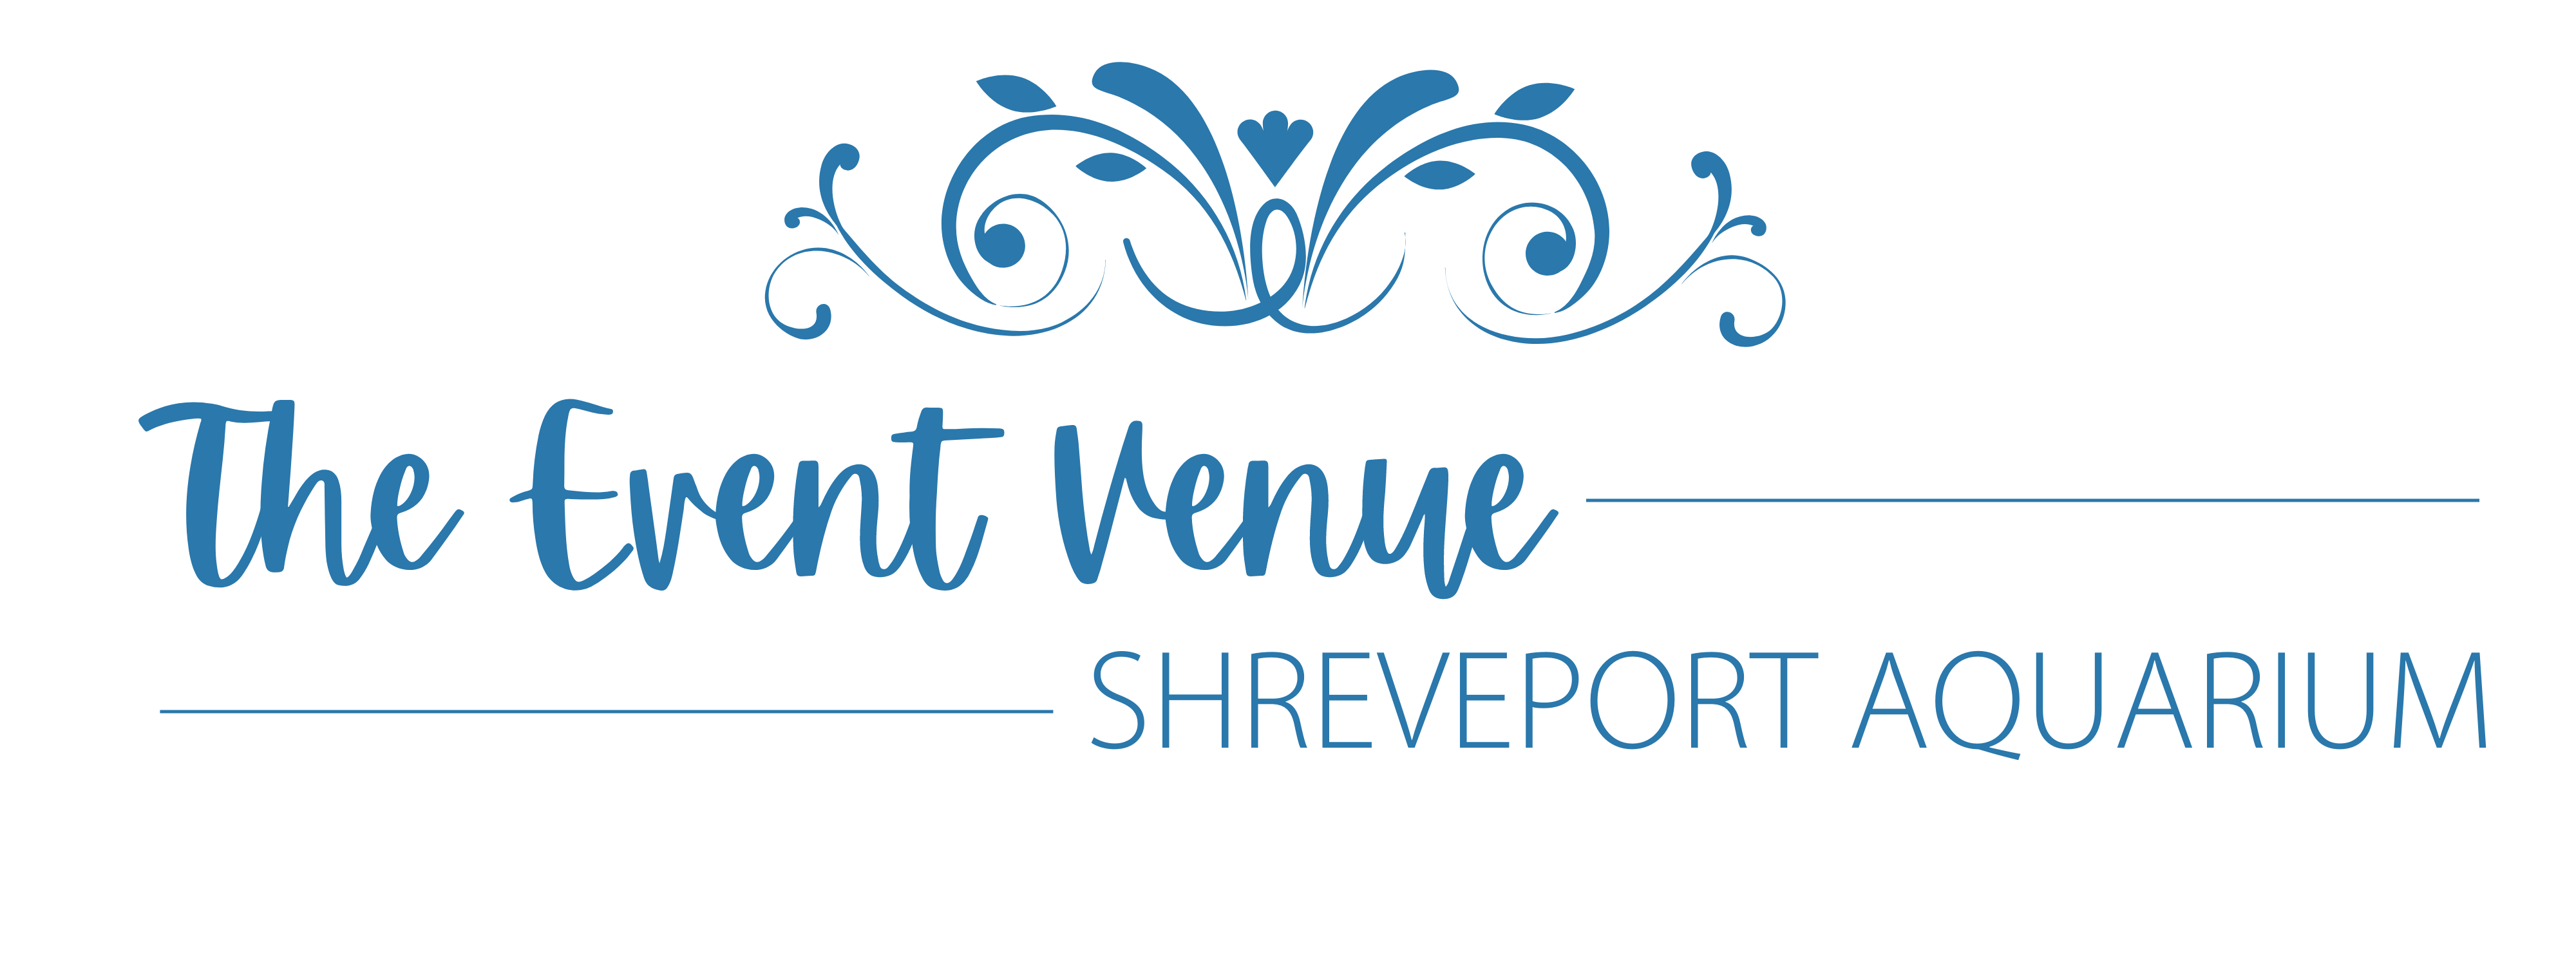 Riverwalk Cafe & Event Venue at Shreveport Aquarium